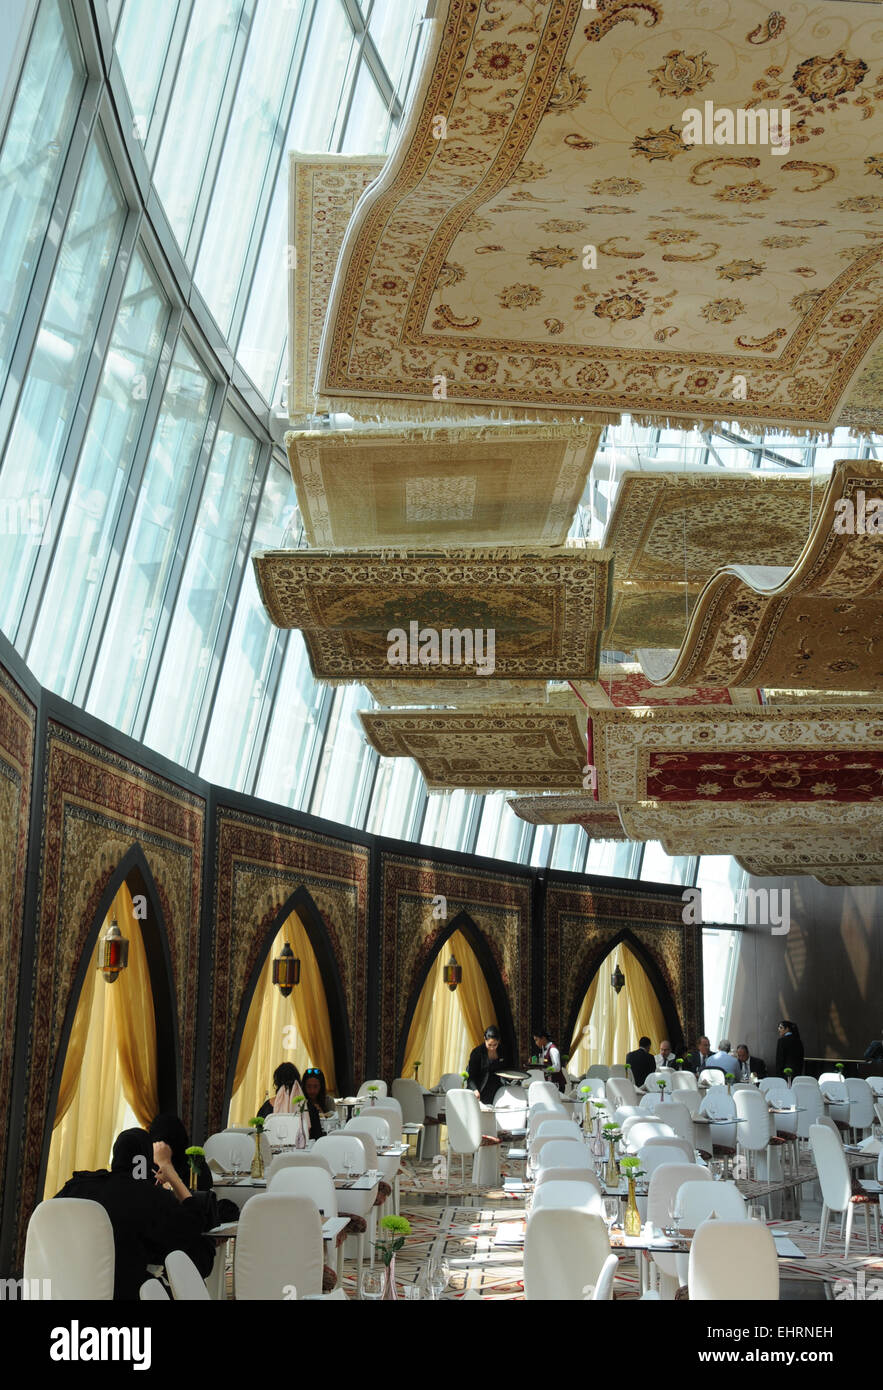 Les tapis volants Restaurant, le Flambeau Hotel, Doha, Qatar. Moyen Orient. Banque D'Images